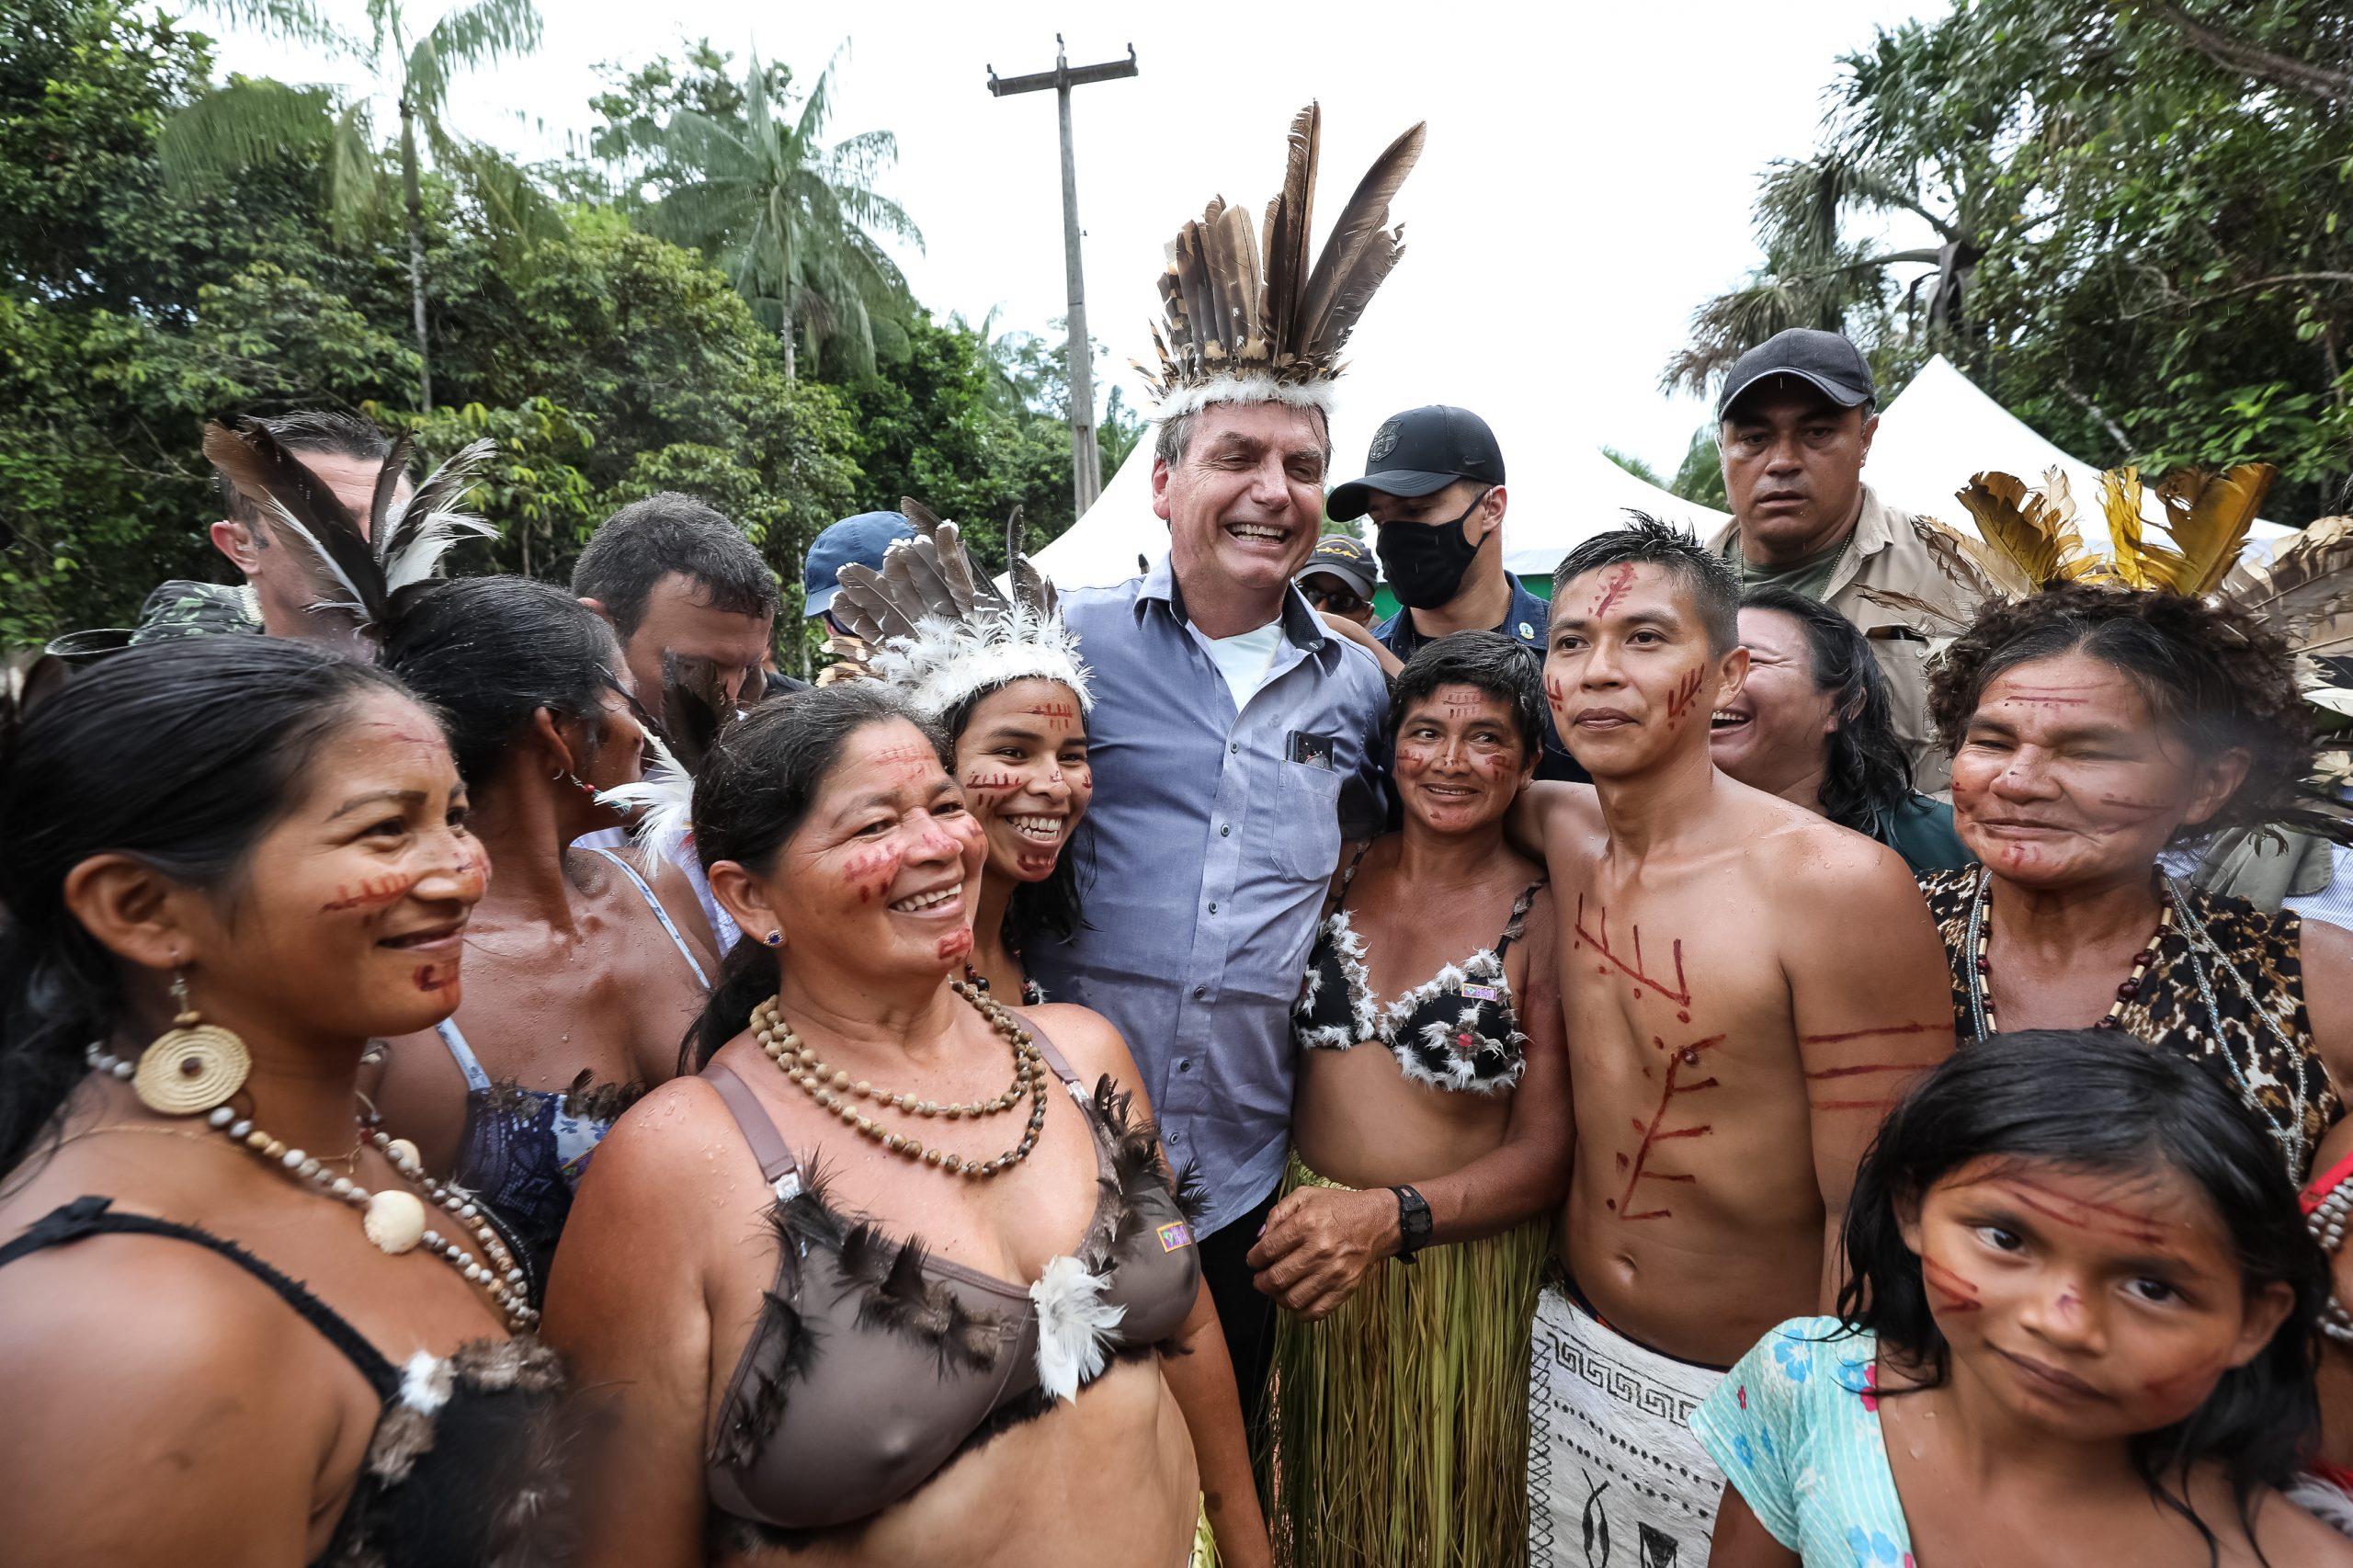 Sob clima de festa, indígenas recebem Bolsonaro com euforia e muitas fotos 16